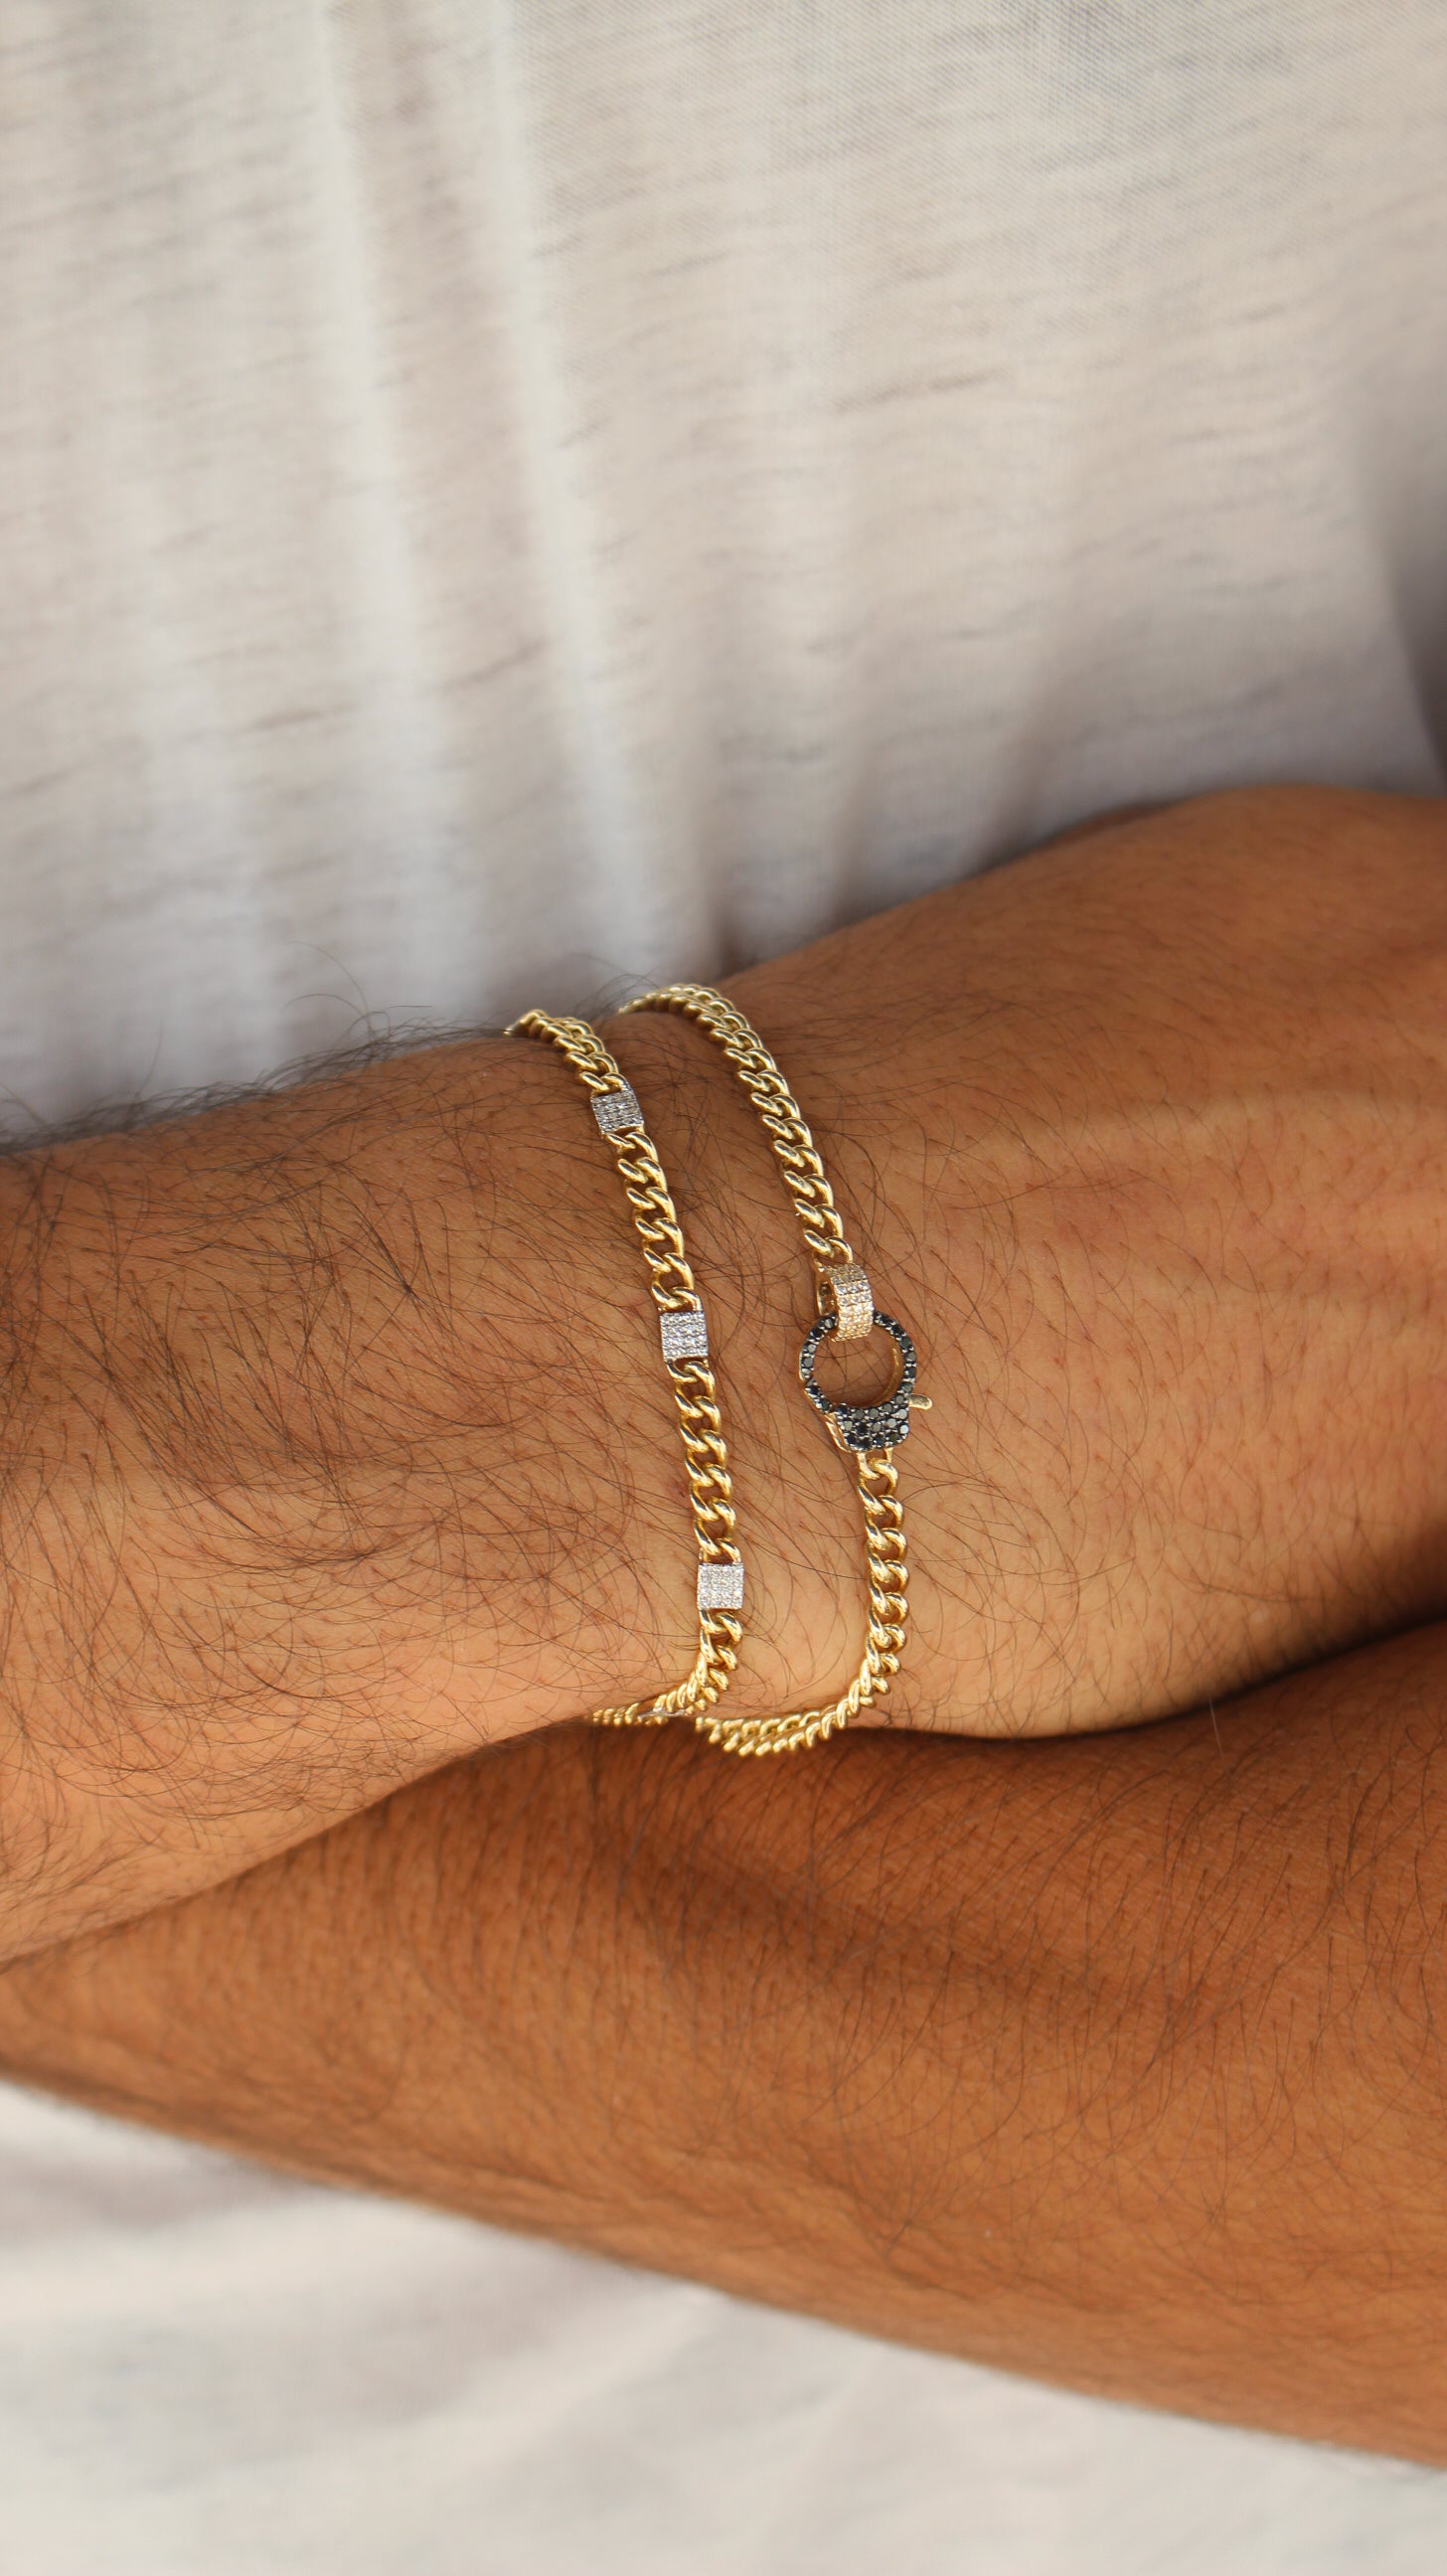 Bracelets | Fine Jewelry for Women - Monisha Melwani Jewelry